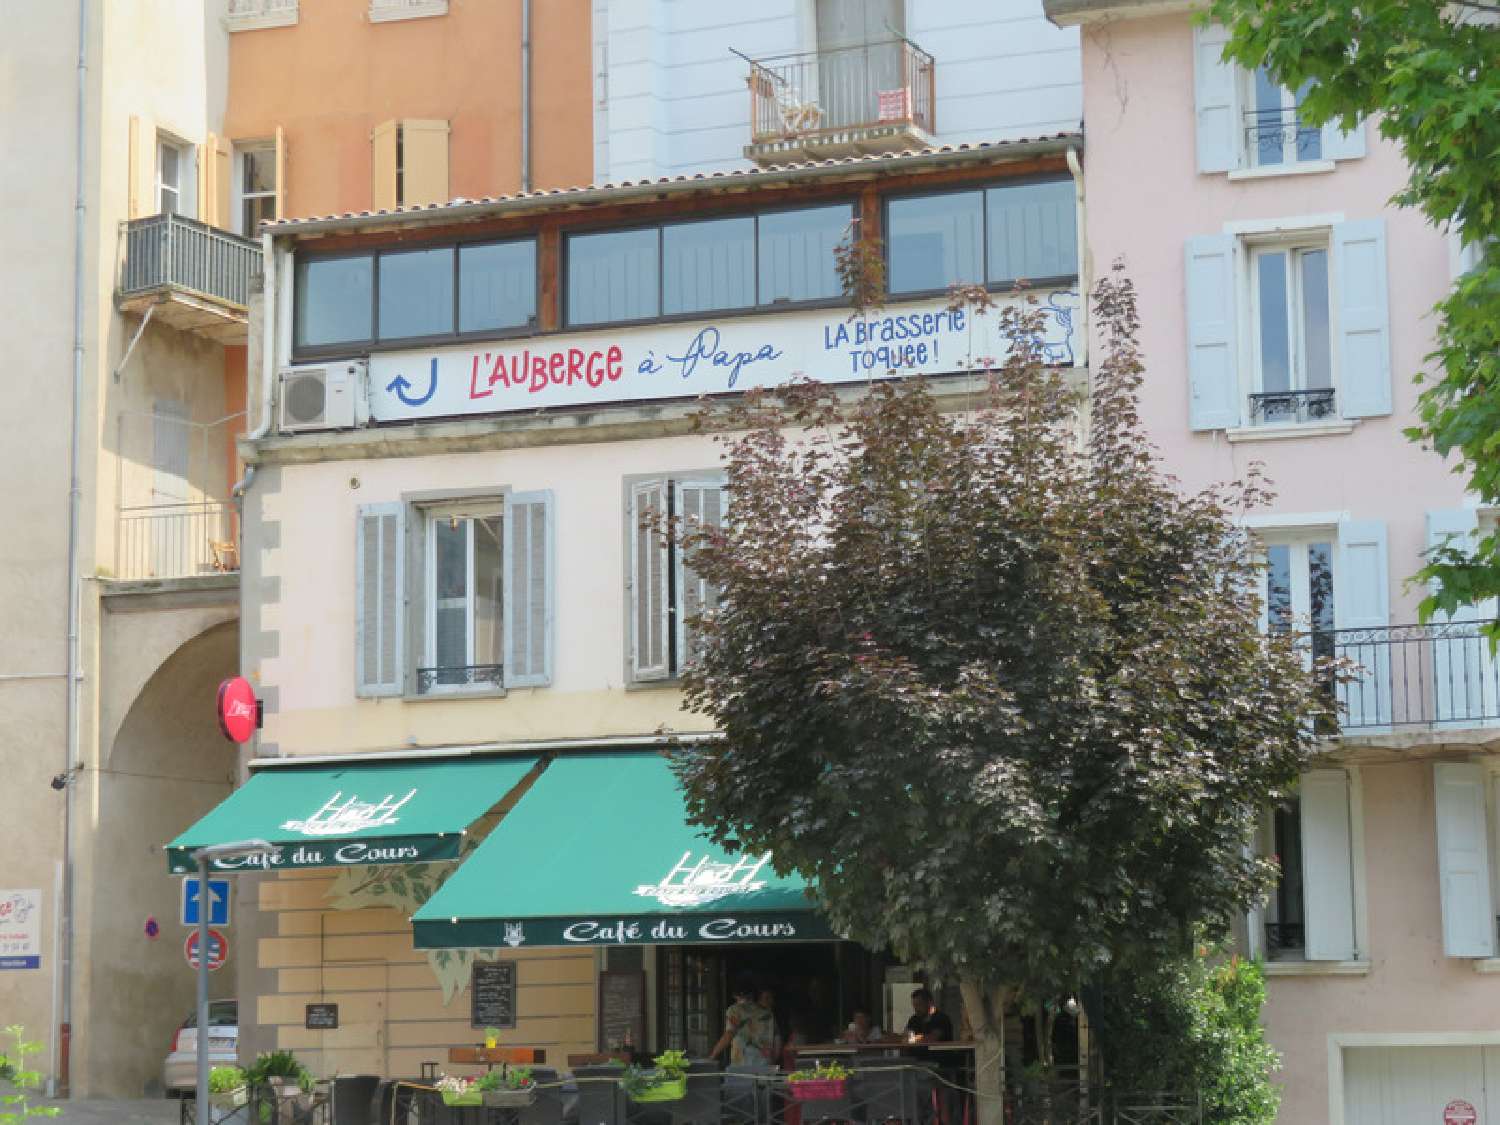  te koop appartement Digne-Les-Bains Alpes-de-Haute-Provence 1